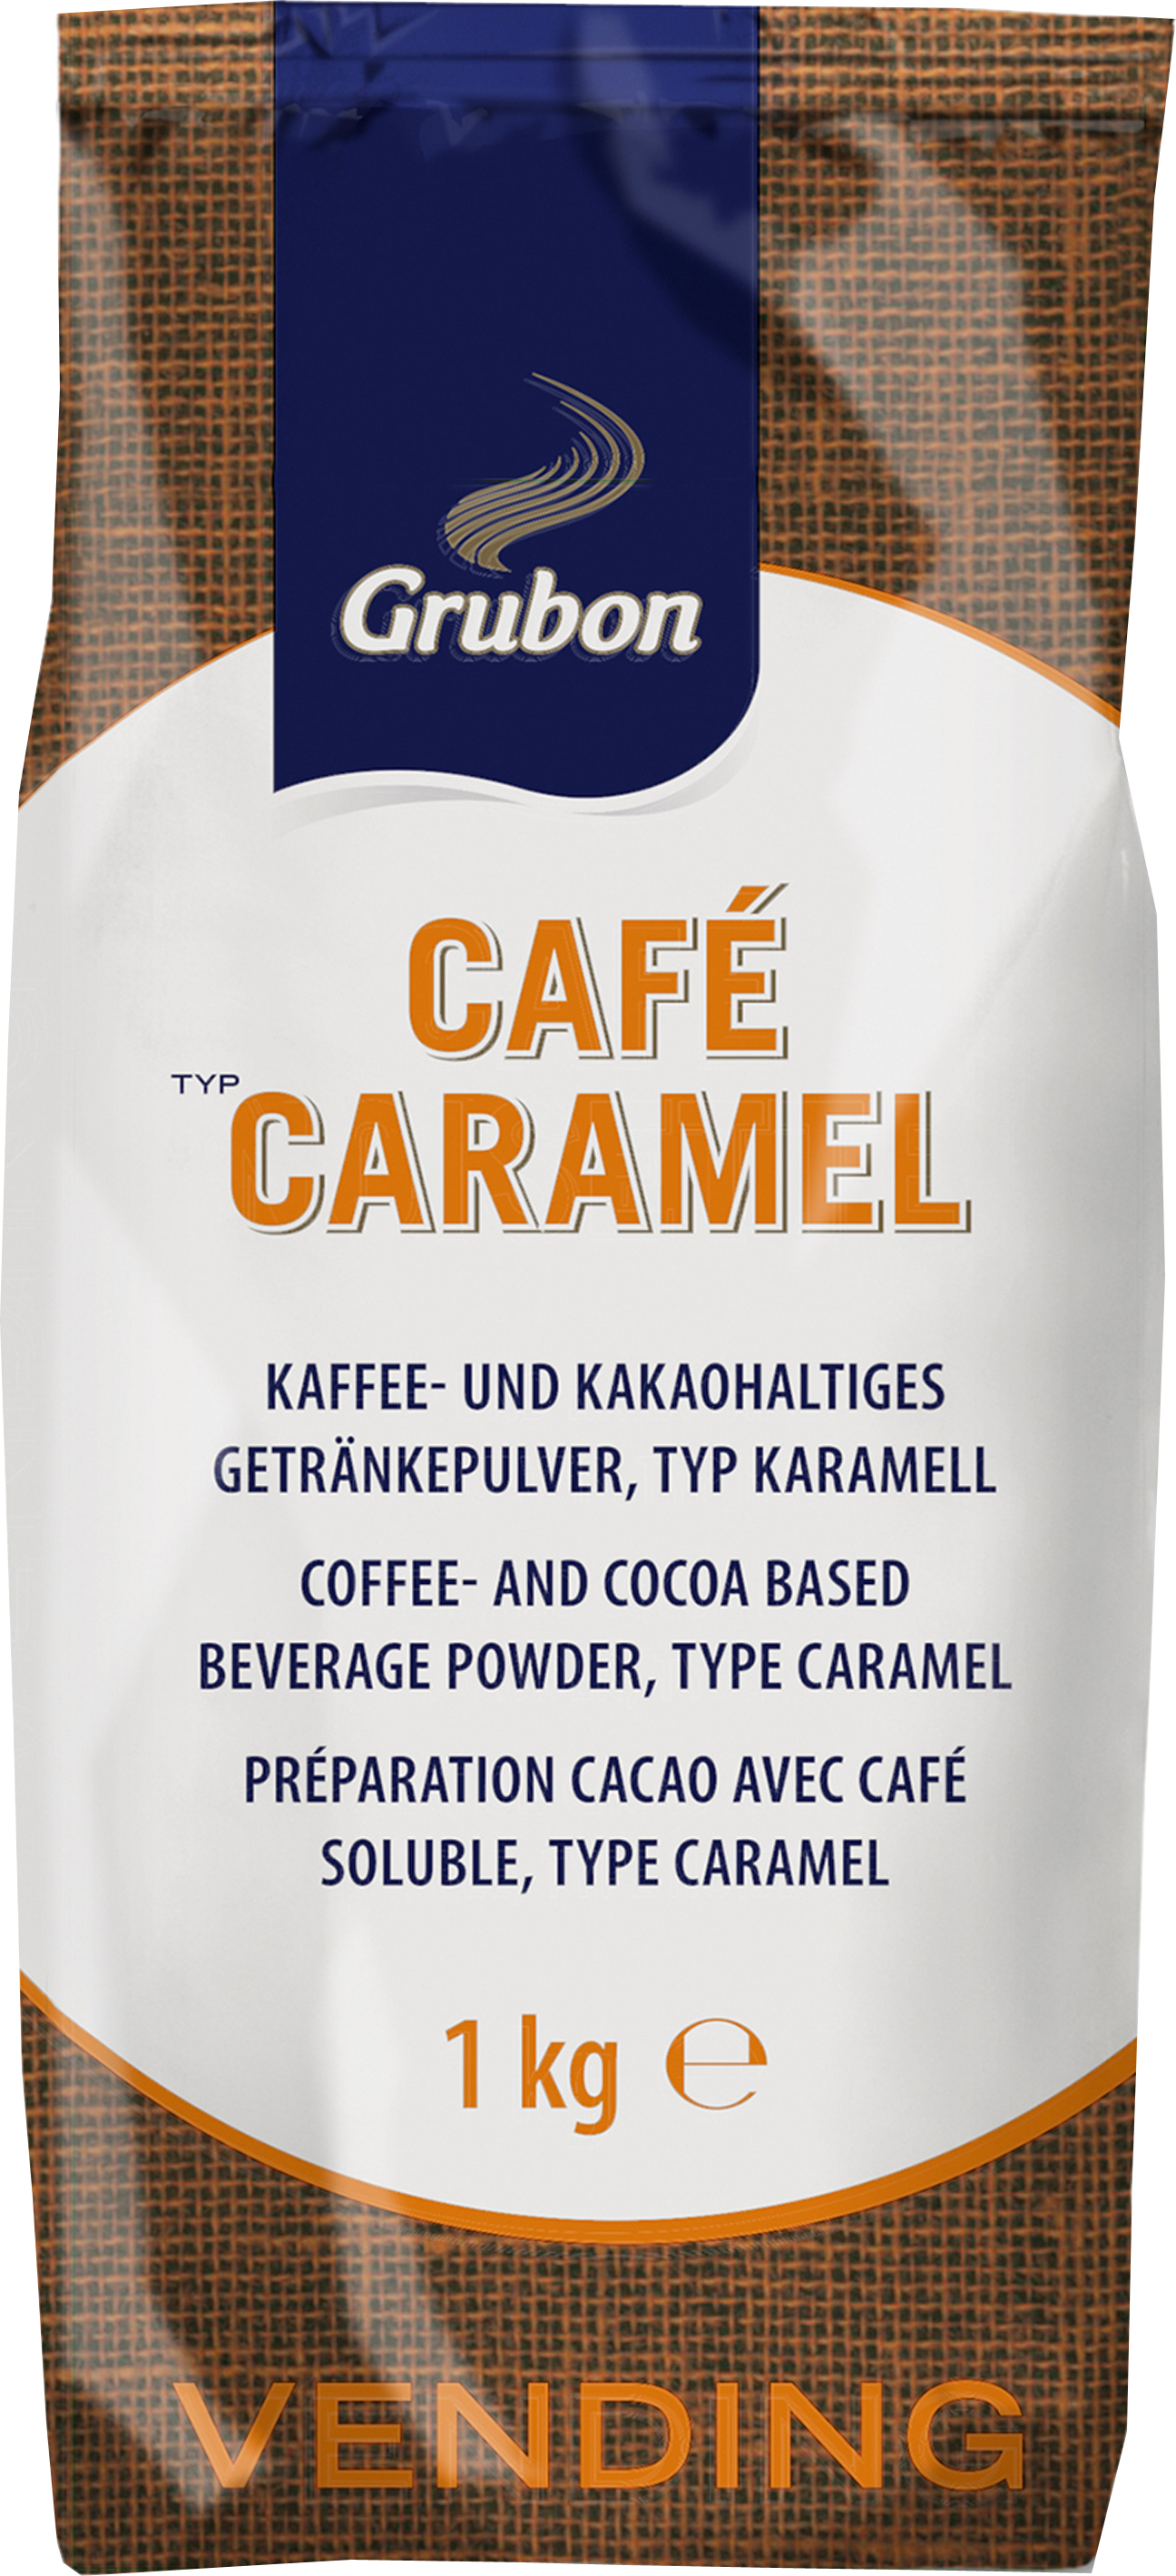 Grubon Vendingline Café Caramel